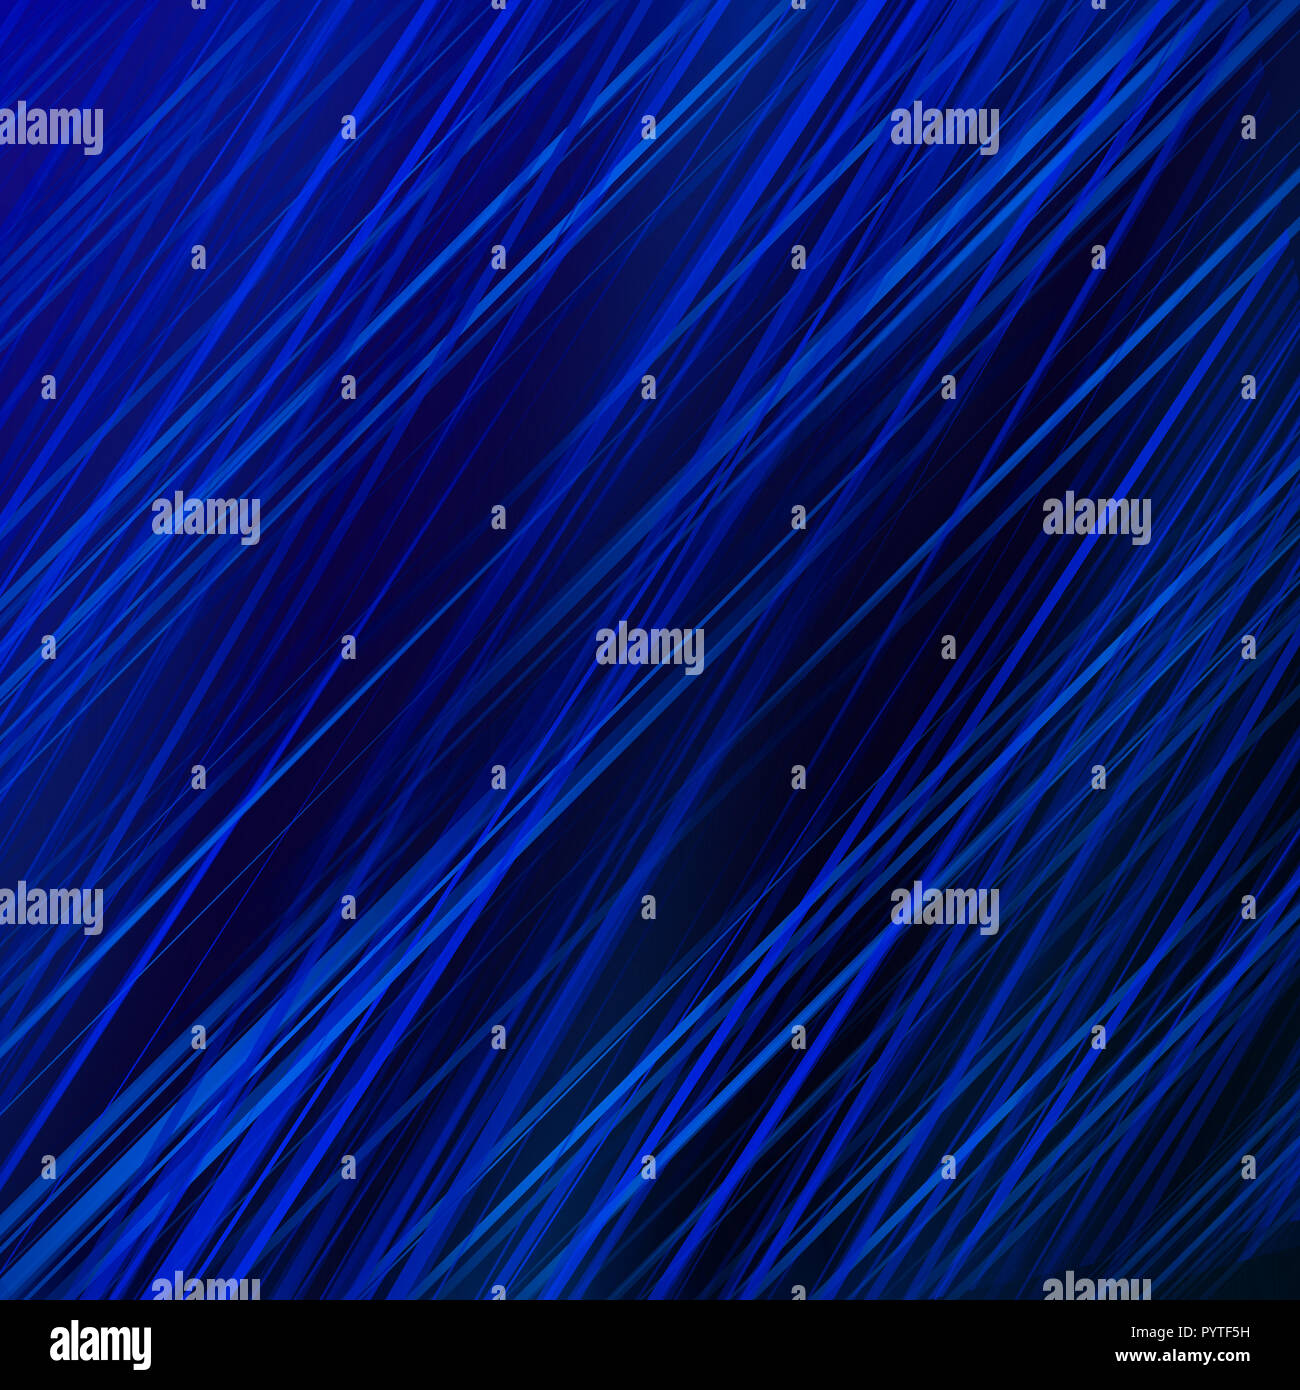 Abstrakt Blau diagonale Linien musterüberlagerung Hintergrund und Textur Stockfoto